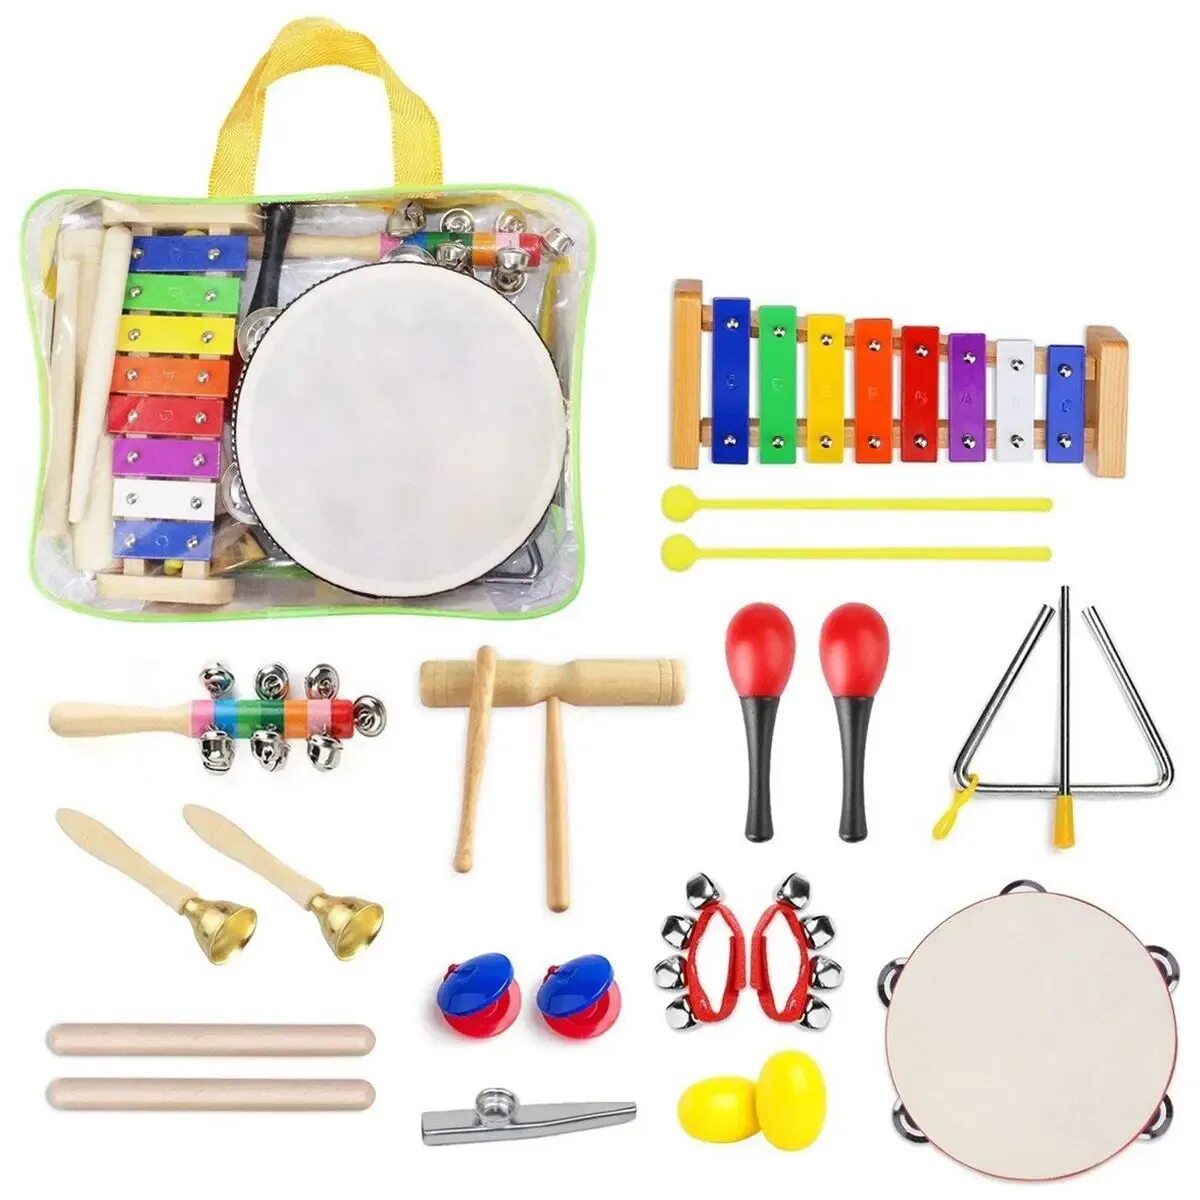 Музыкальные инструменты игрушки. Детские музыкальные инструменты. Набор детских музыкальных инструментов. Набор музыкальных инструментов для детского сада. Детский музыкальный набор